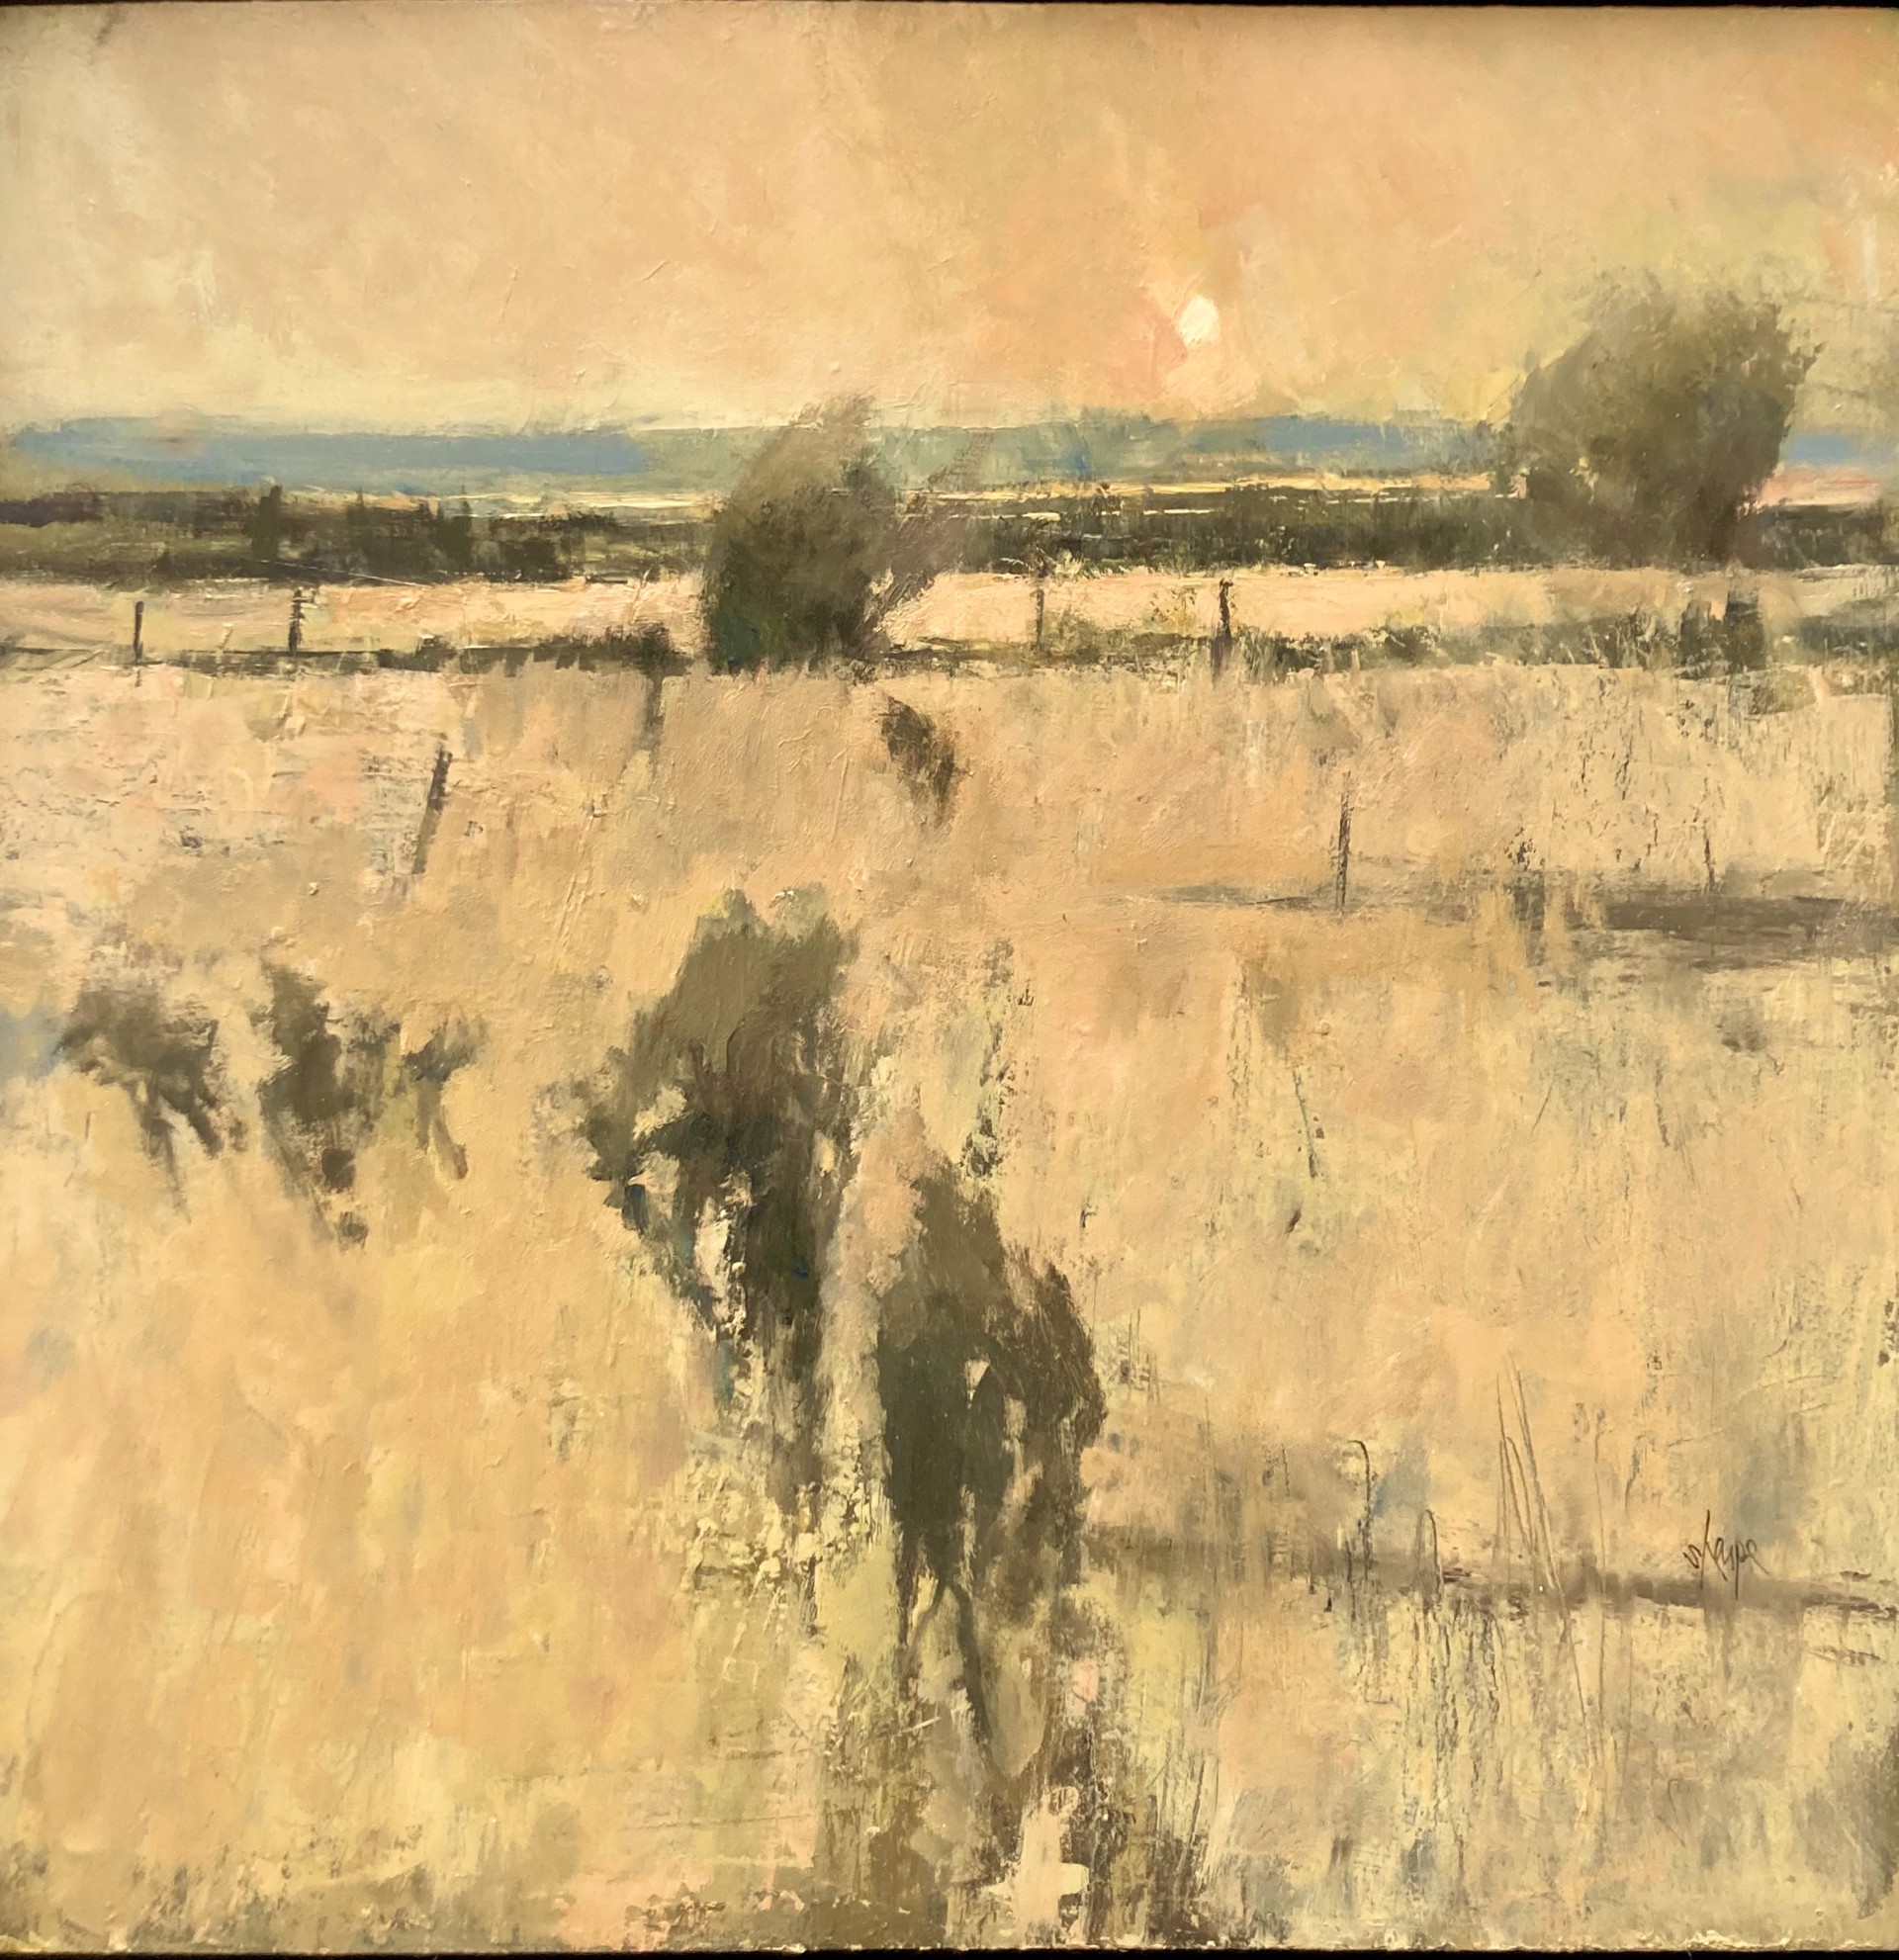 Grasslands by David Sharpe